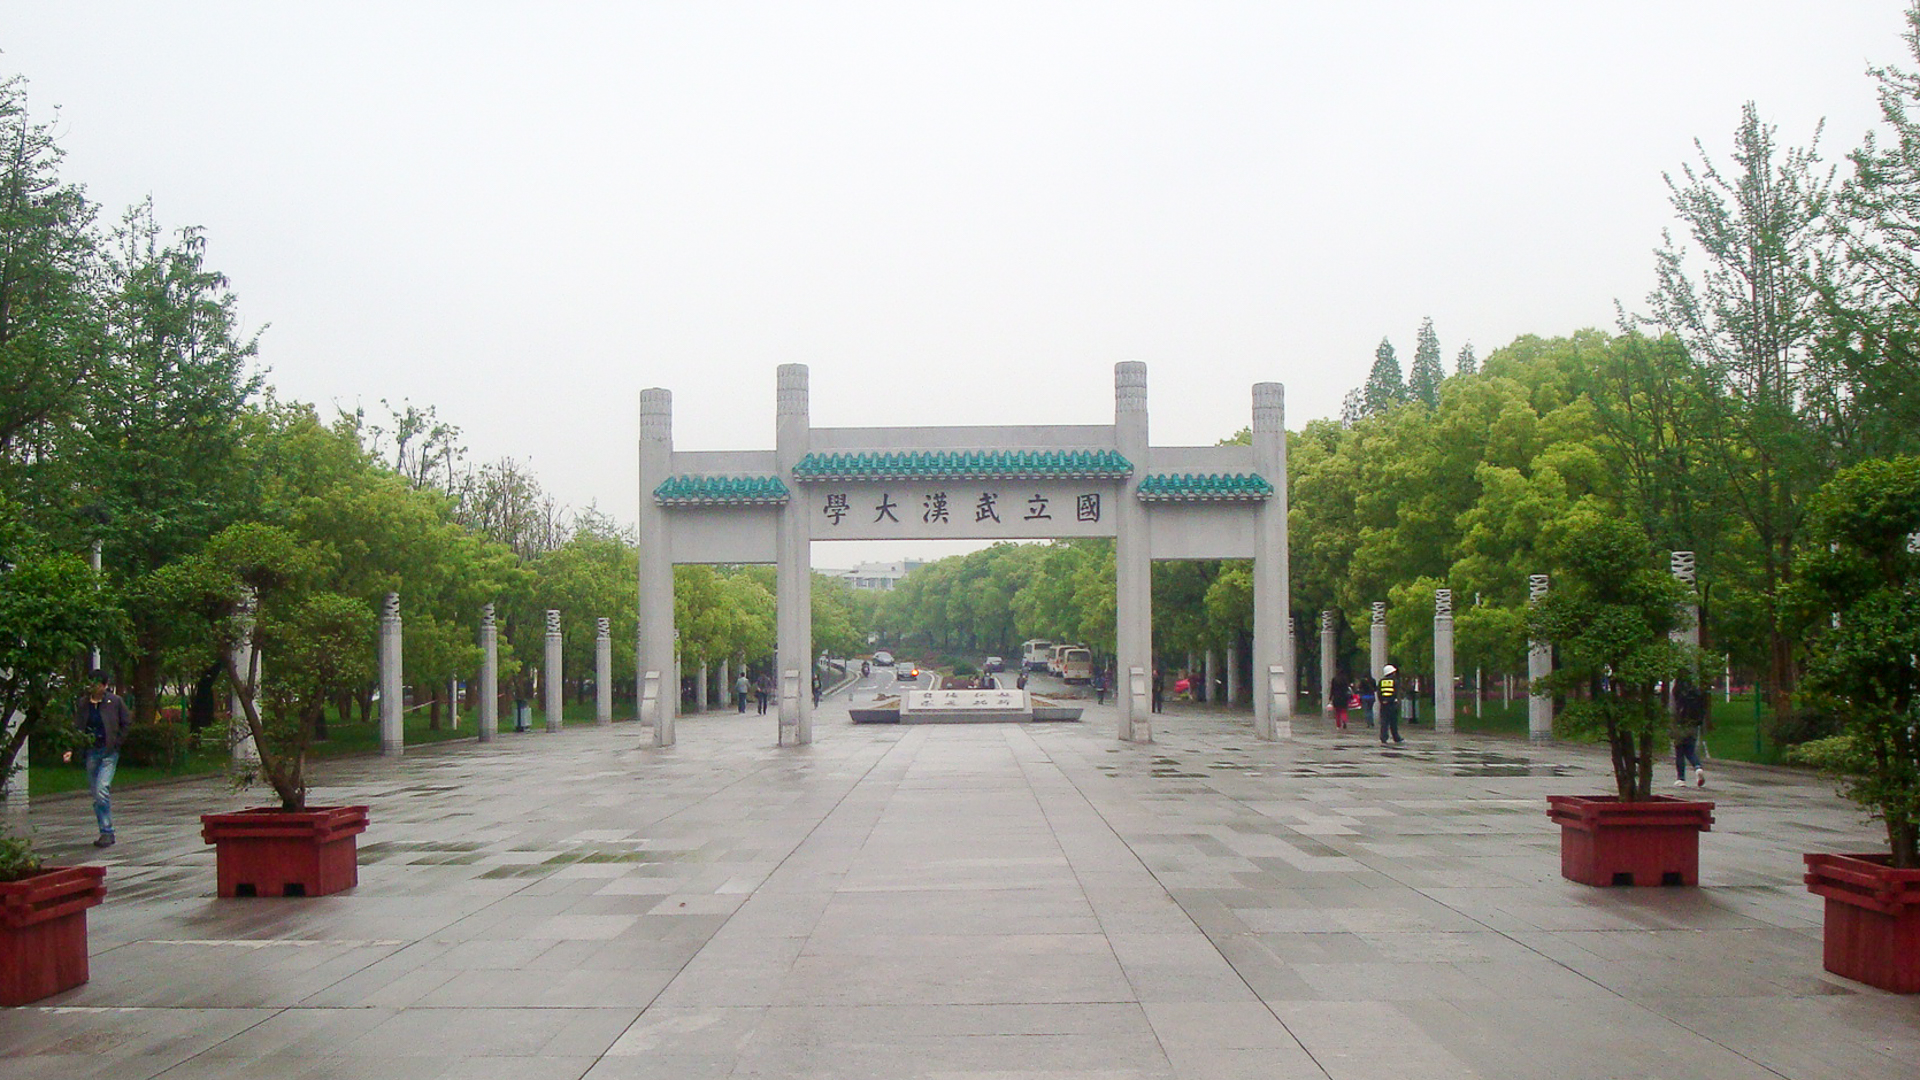 喜欢武汉大学的风景吗？你会给武汉大学打几分呢？